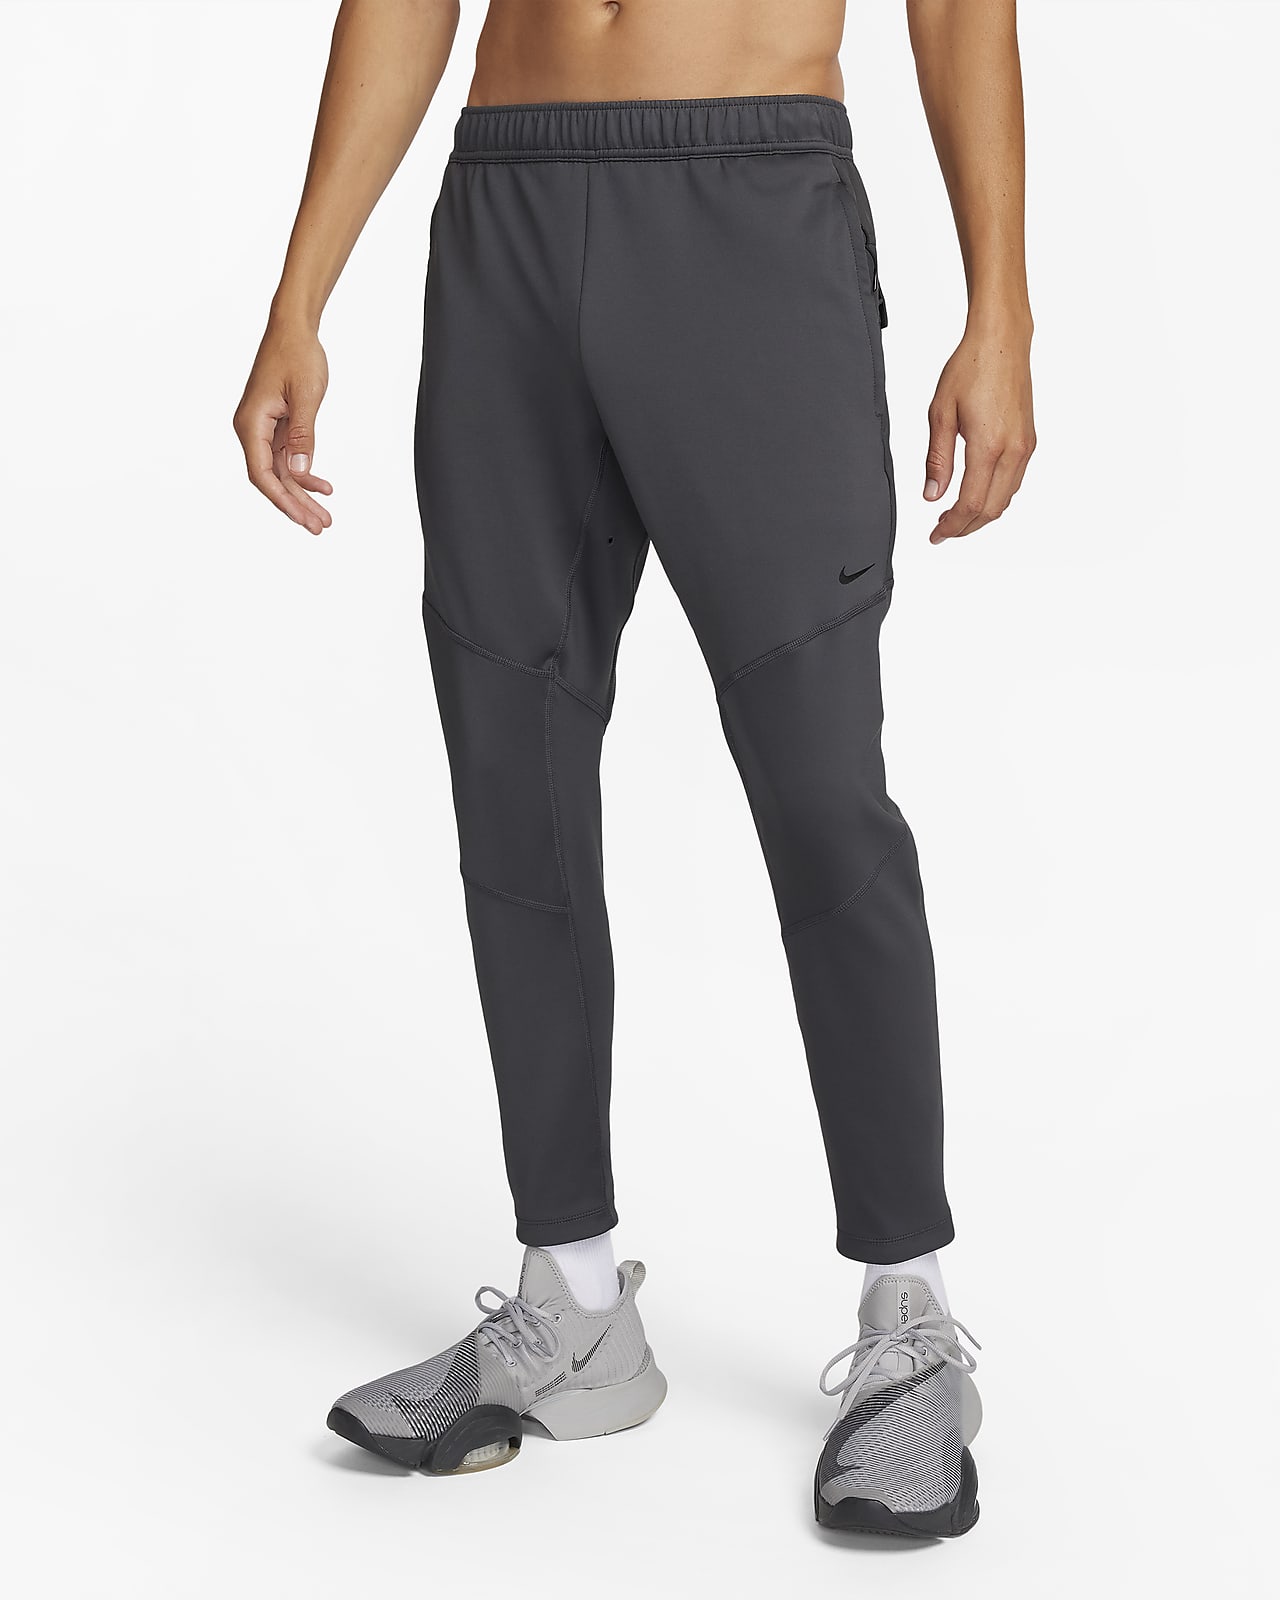 Ανδρικό παντελόνι fitness με πρακτική εφαρμογή Nike Dri-FIT ADV Axis